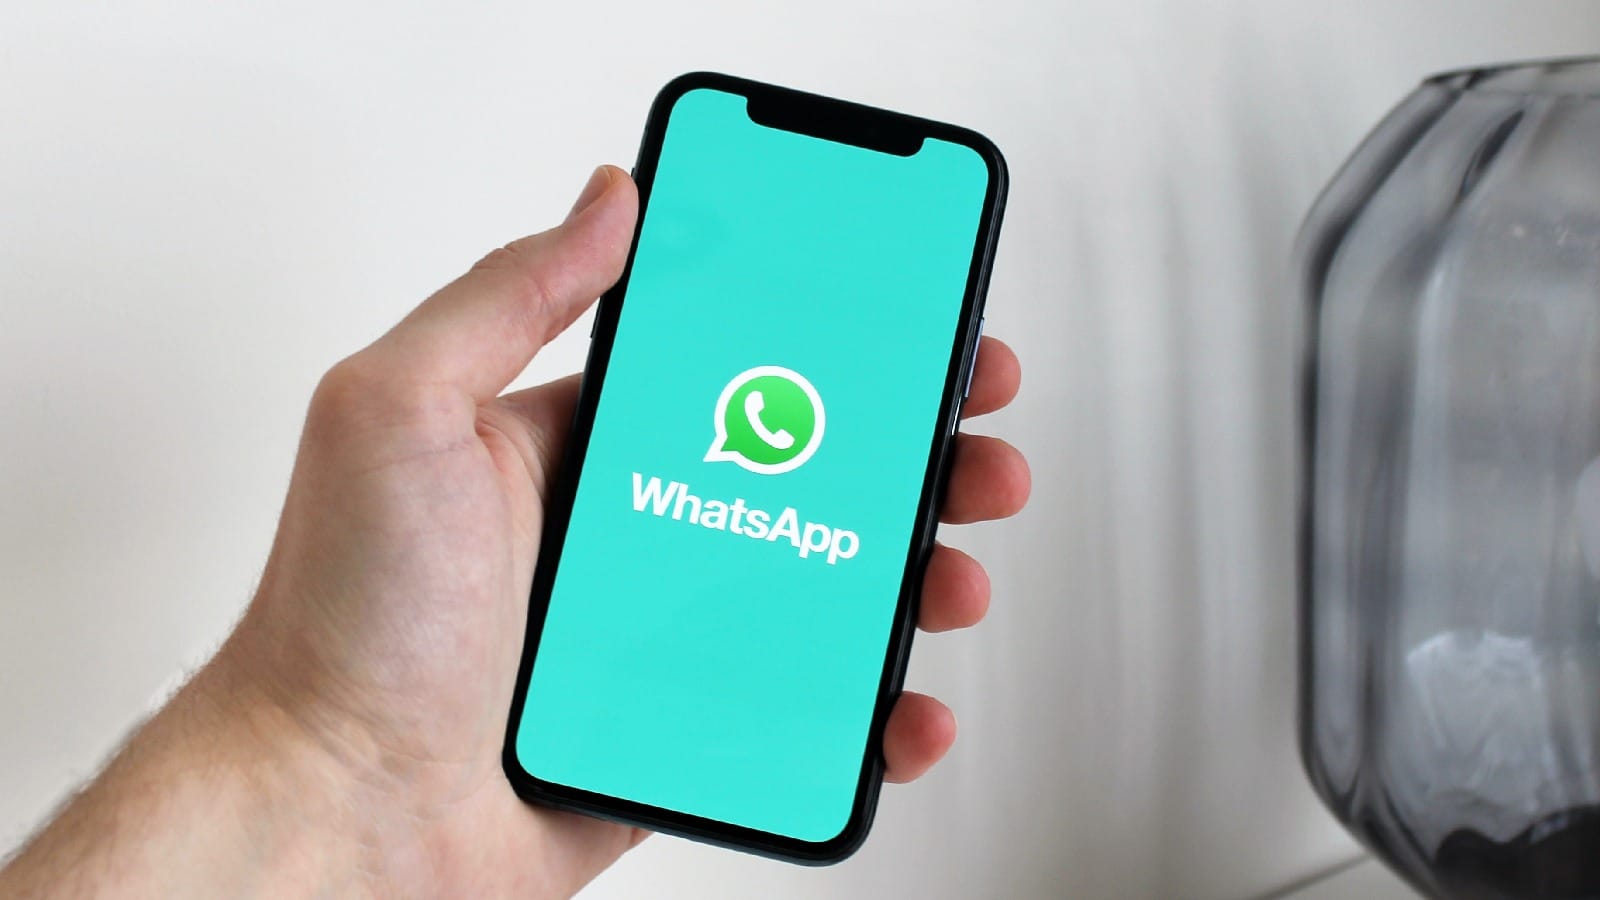 WhatsApp внедрит блокировку снимков экрана для однократного просмотра изображений с двумя другими функциями конфиденциальности ...